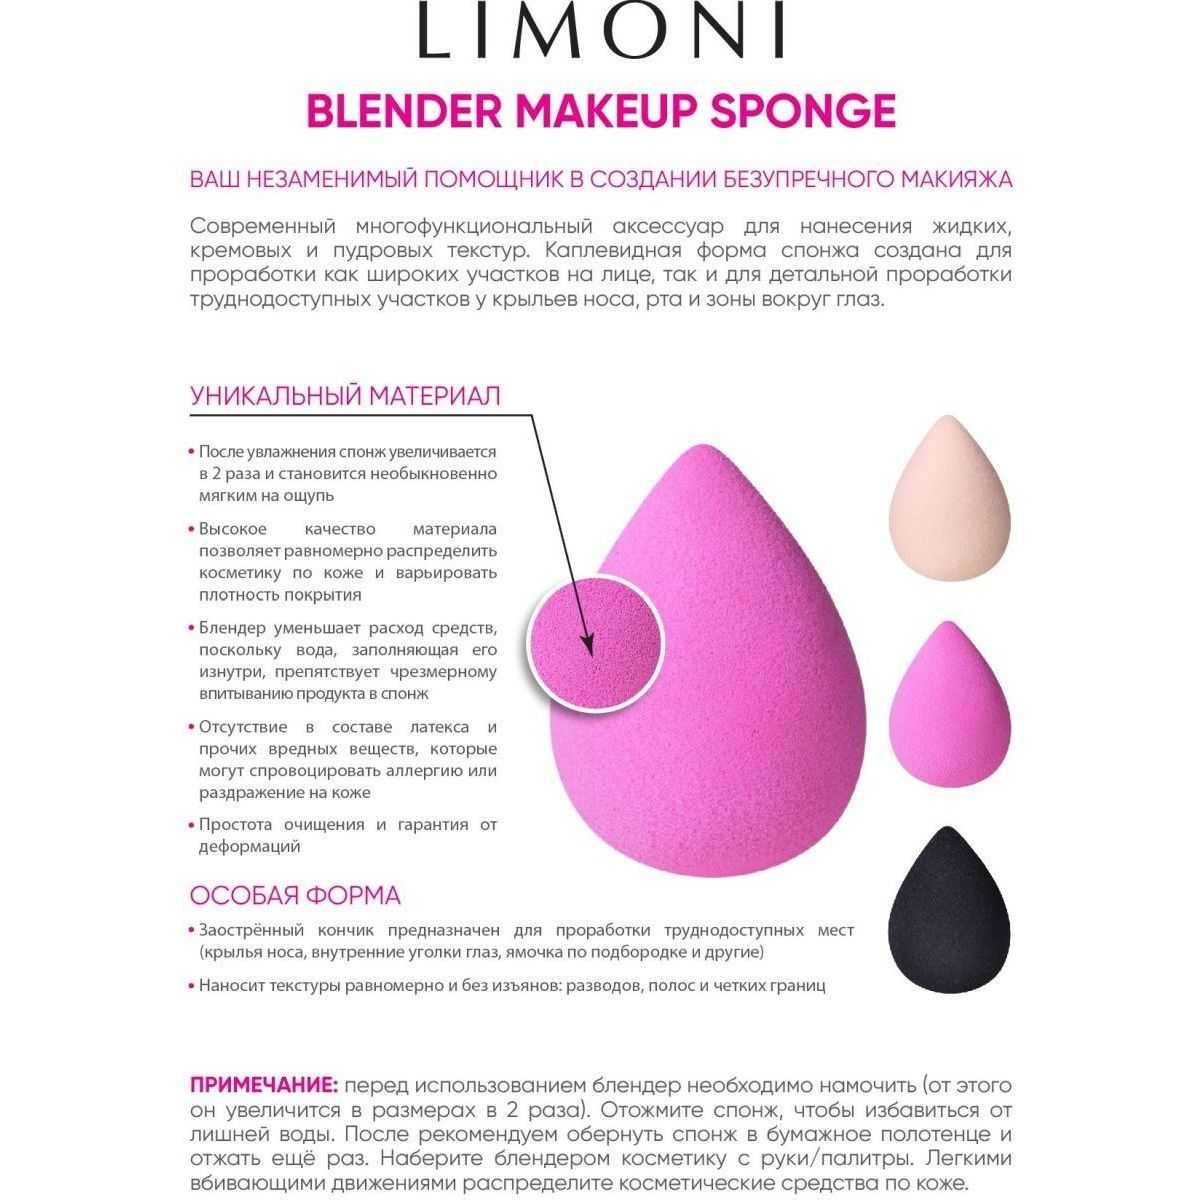 Бьюти блендер- правила использования спонжа beauty blender » womanmirror
бьюти блендер- правила использования спонжа beauty blender